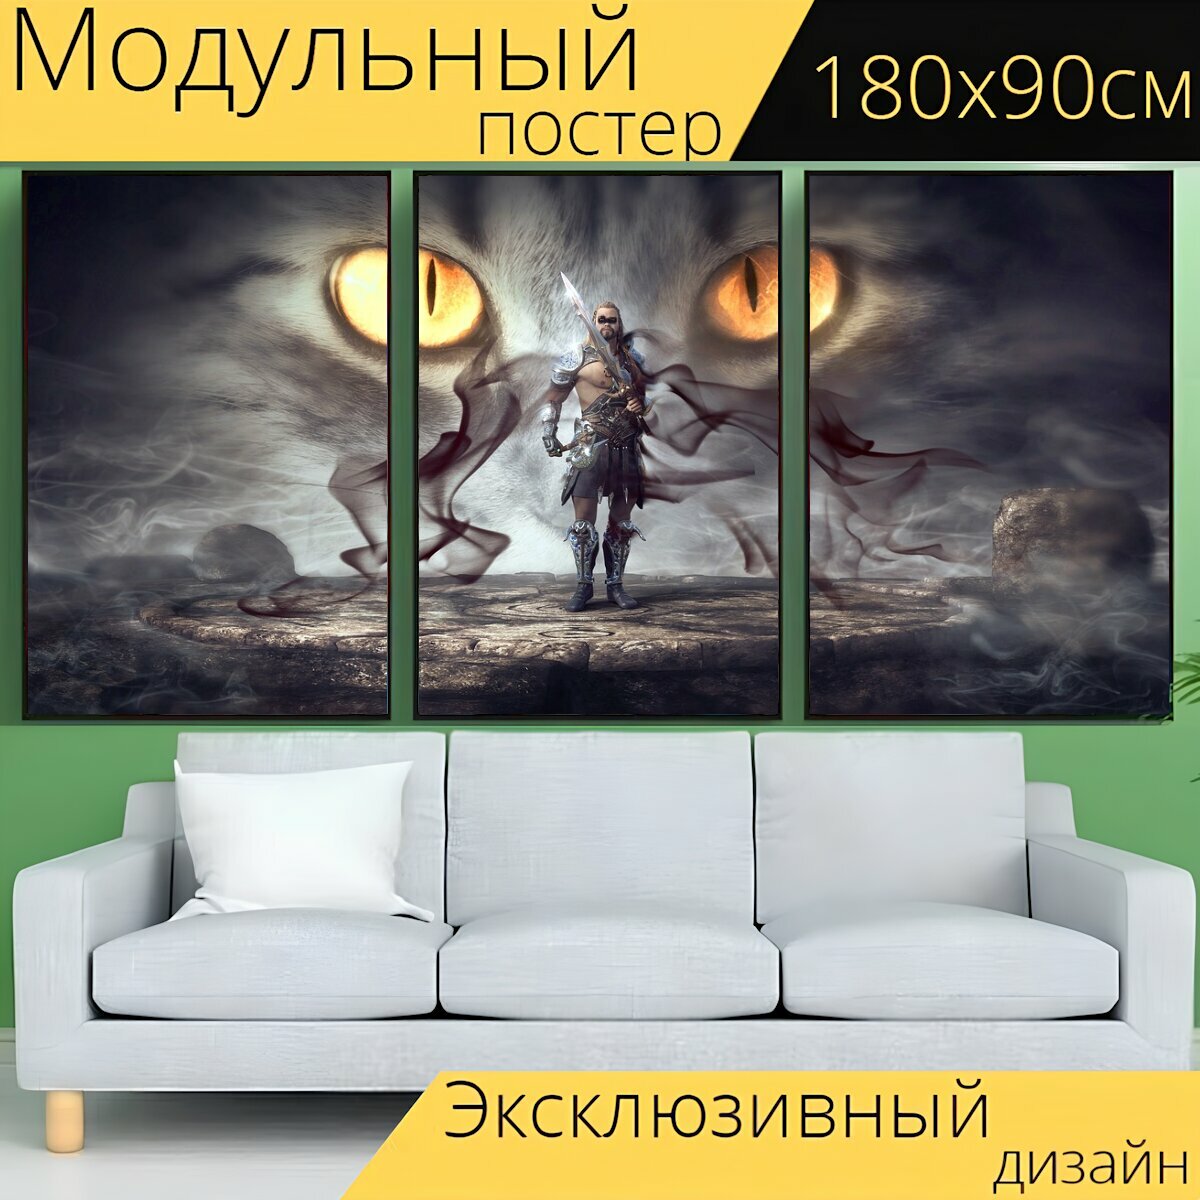 Модульный постер "Фантазия, воин, мистический" 180 x 90 см. для интерьера